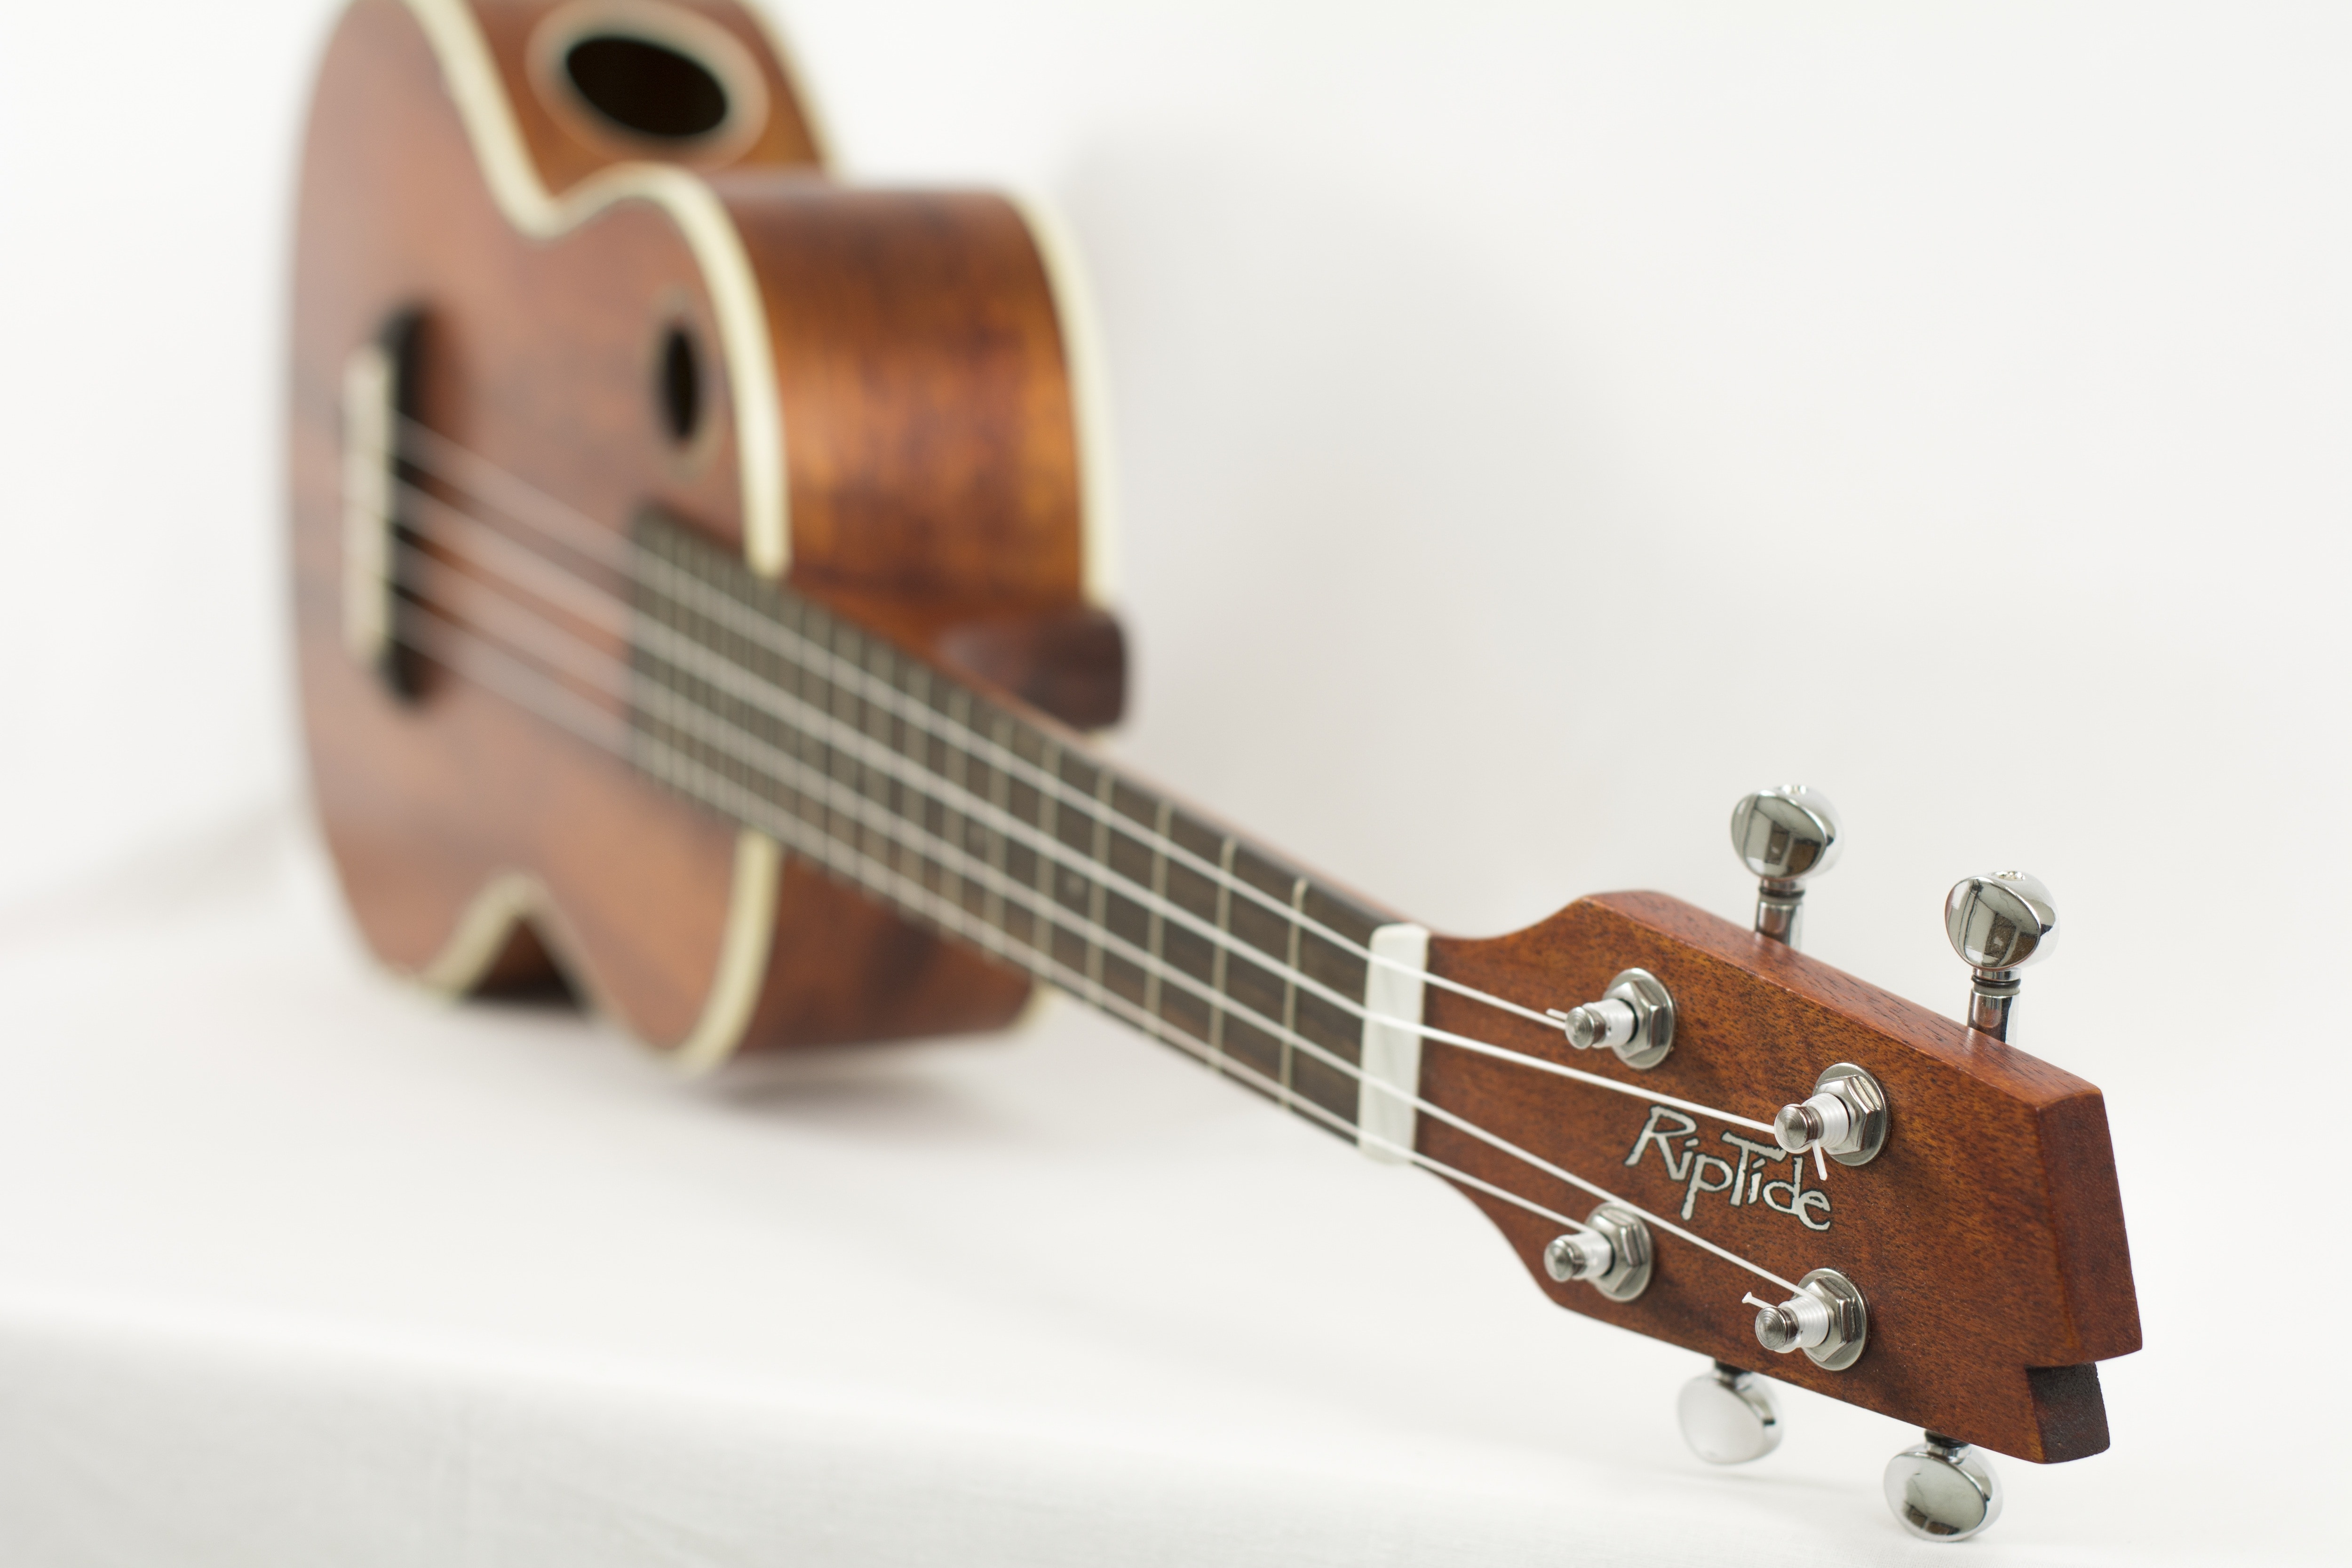 side view of brown RipTide ukulele